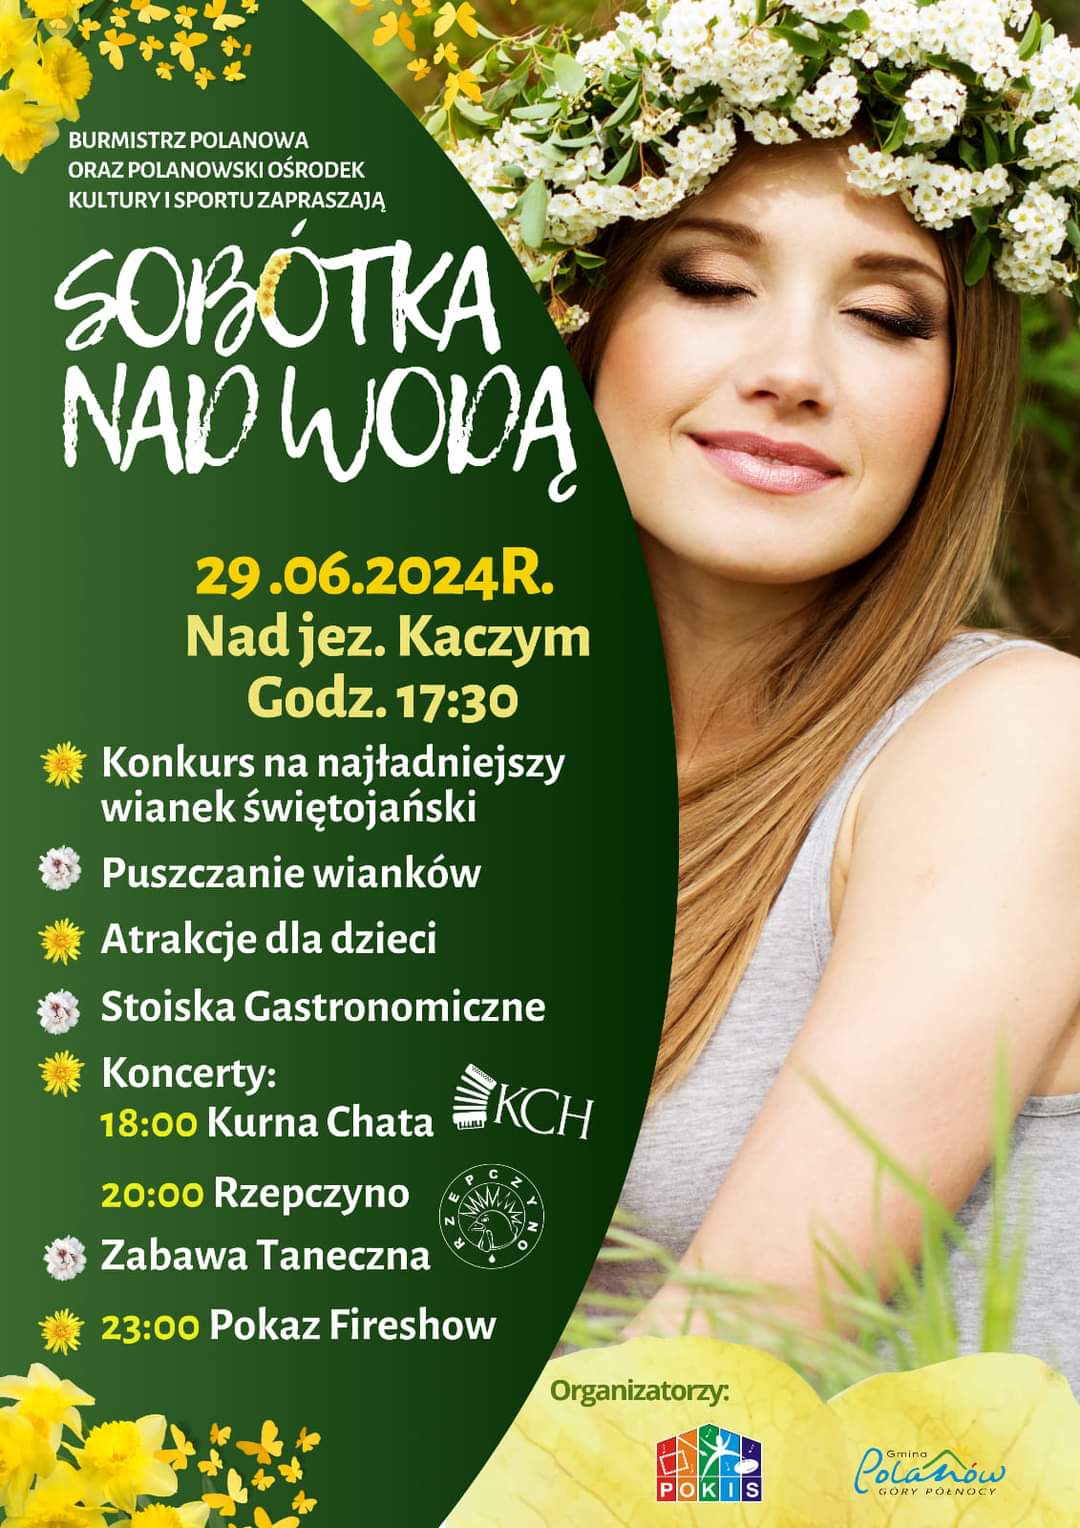 Plakat z zaproszeniem na sobótkę nad wodą w Polanowie 29 czerwca 2024